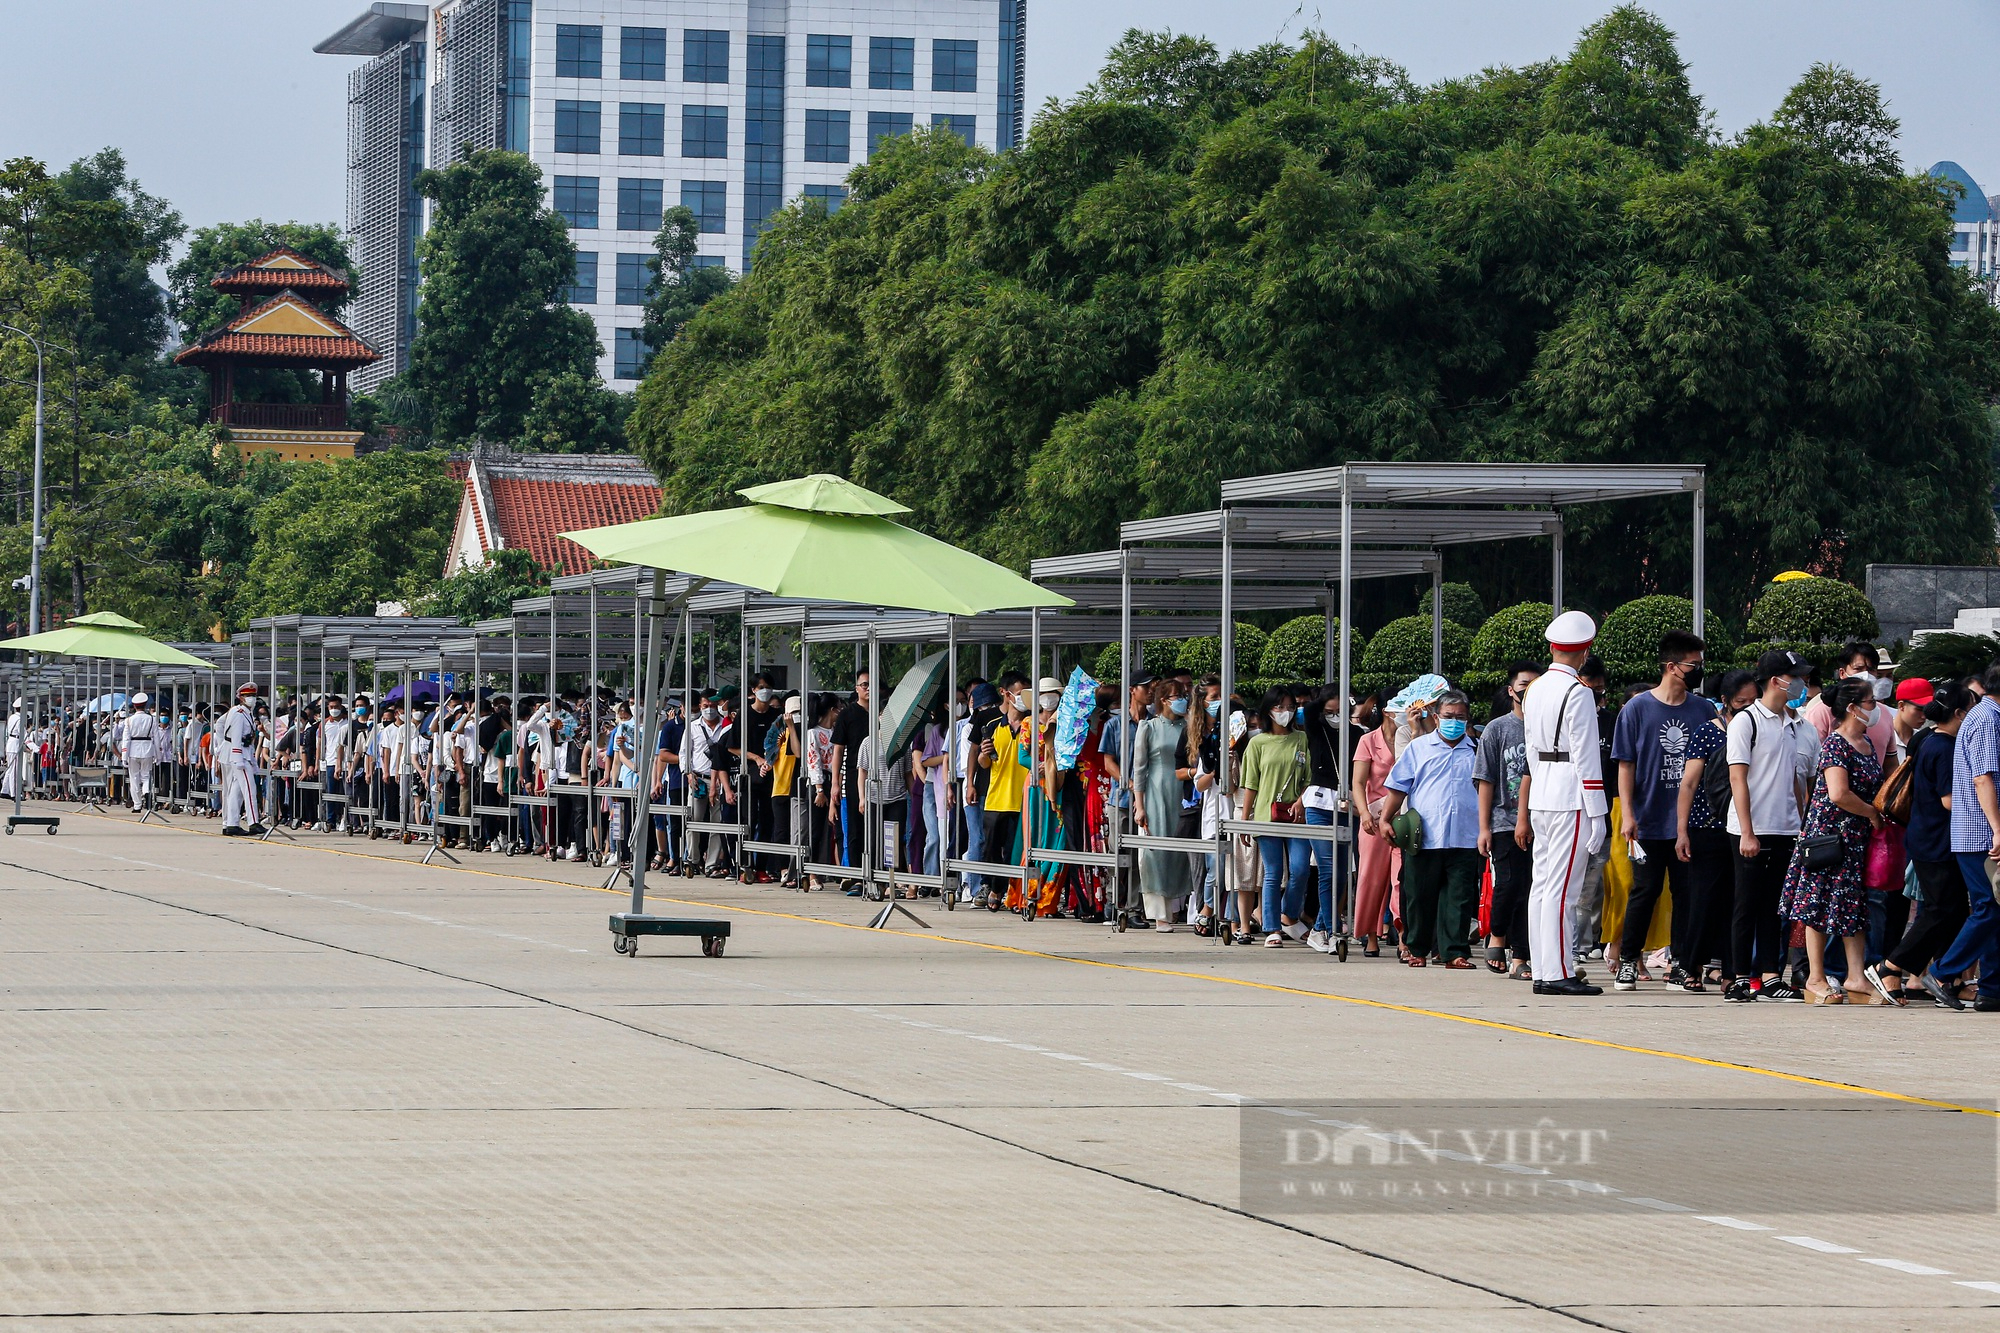 Hàng vạn người xếp hàng dài vào Lăng viếng Chủ tịch Hồ Chí Minh ngày Quốc khánh 2/9 - Ảnh 5.